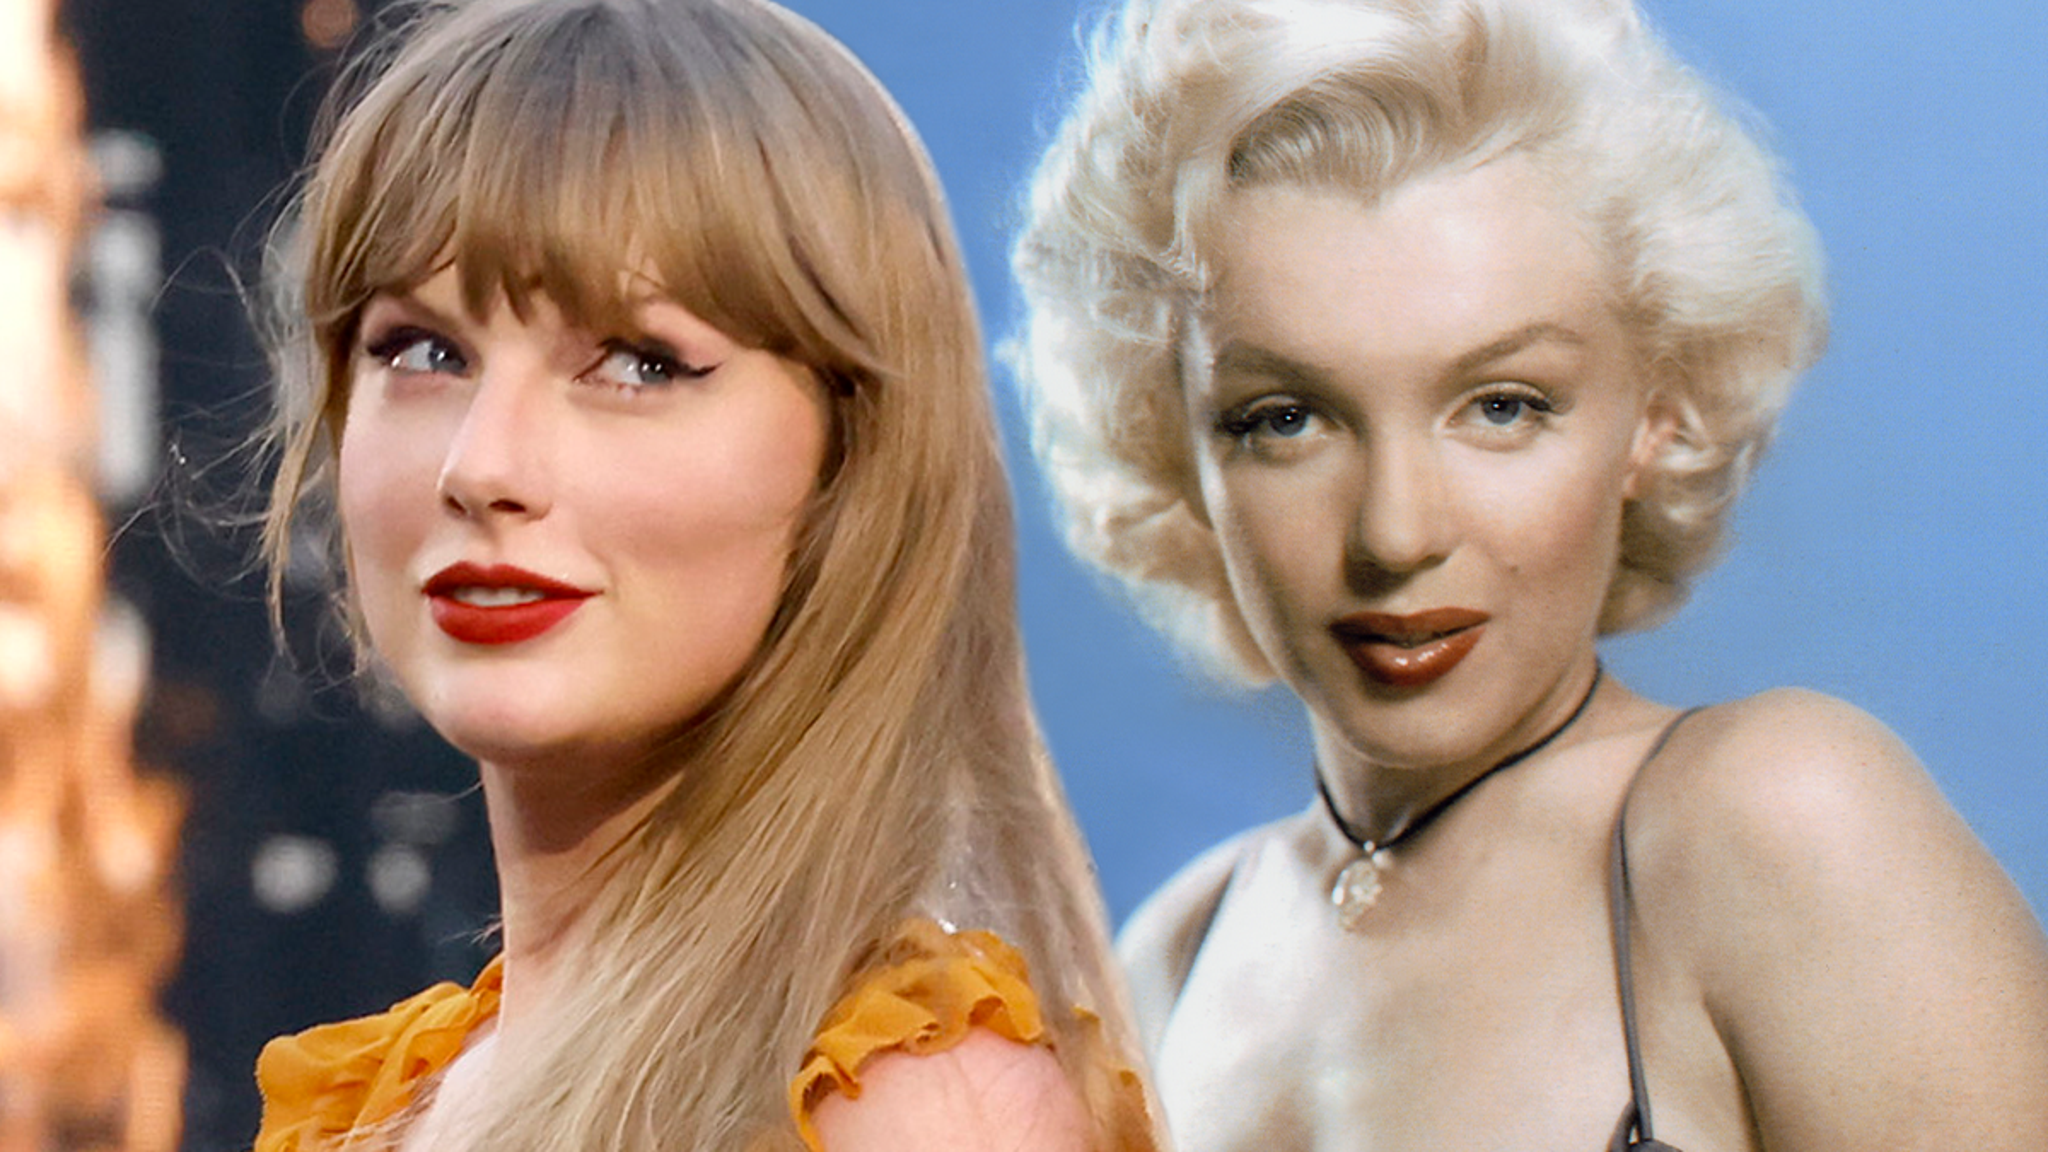 O momento Marilyn Monroe “Speak Now” de Taylor Swift em 2011 de um novo ângulo